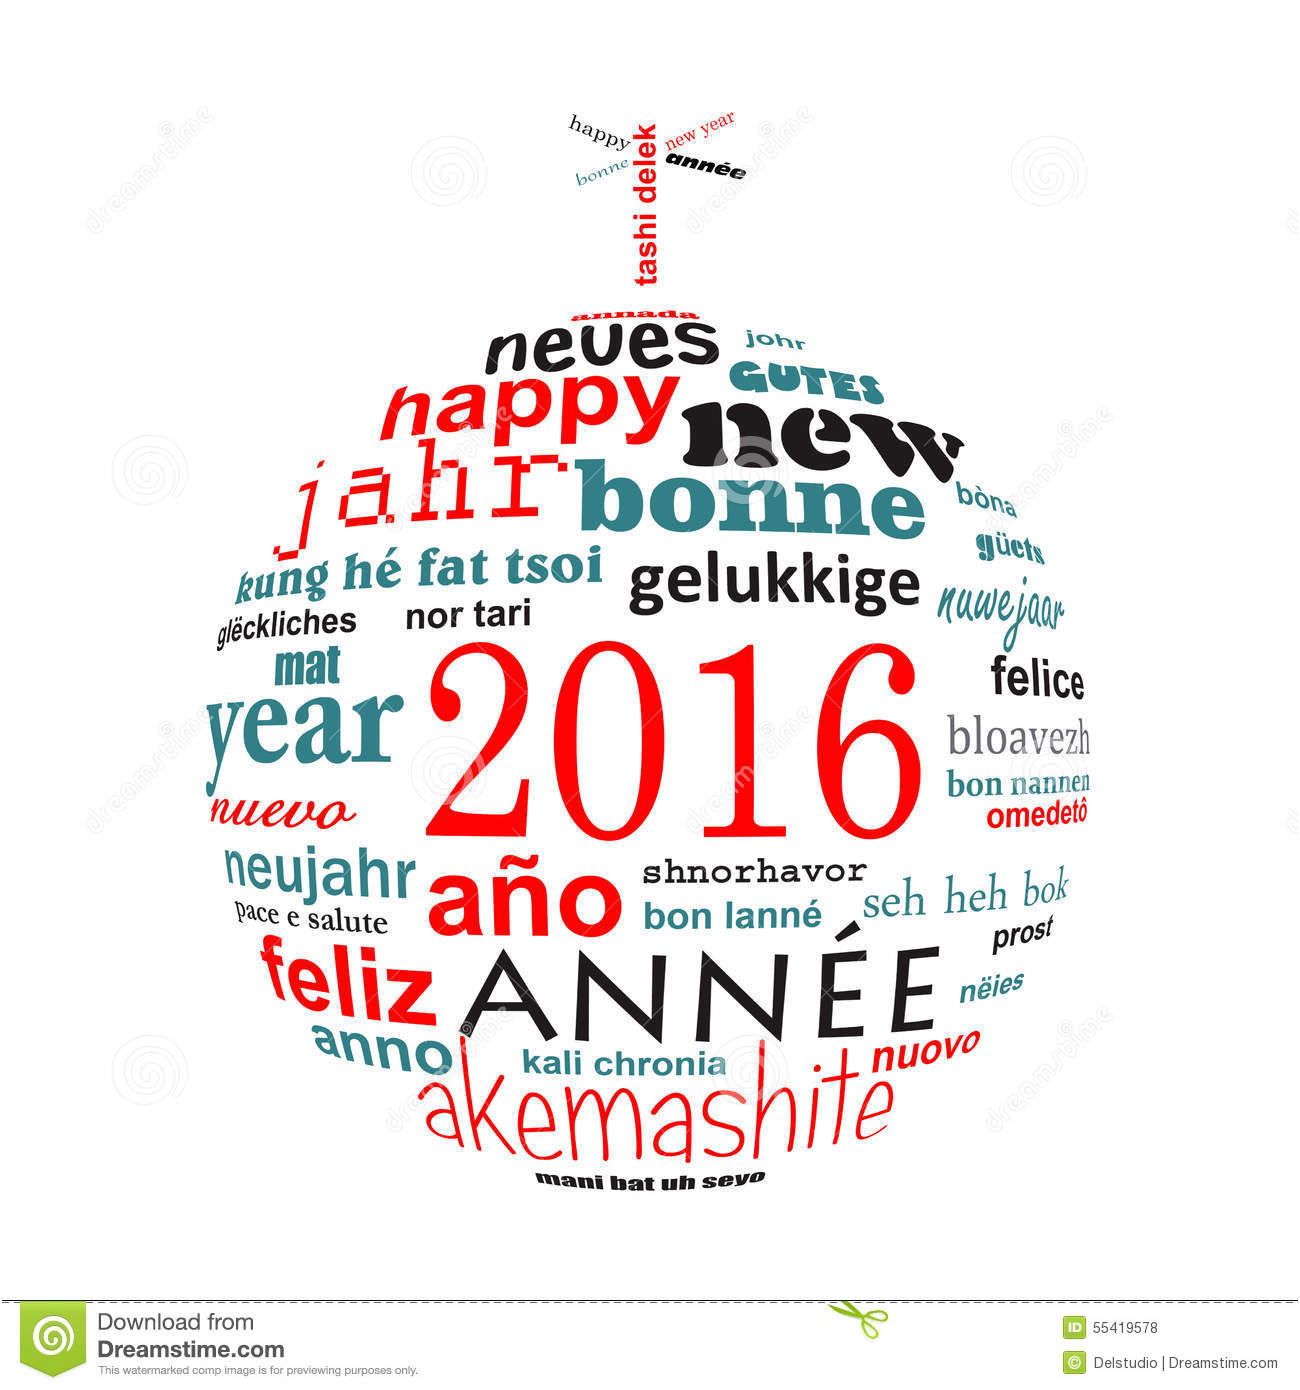 photo stock carte de voeux multilingue de nuage de mot des textes de la nouvelle année sous forme de boule de noël image